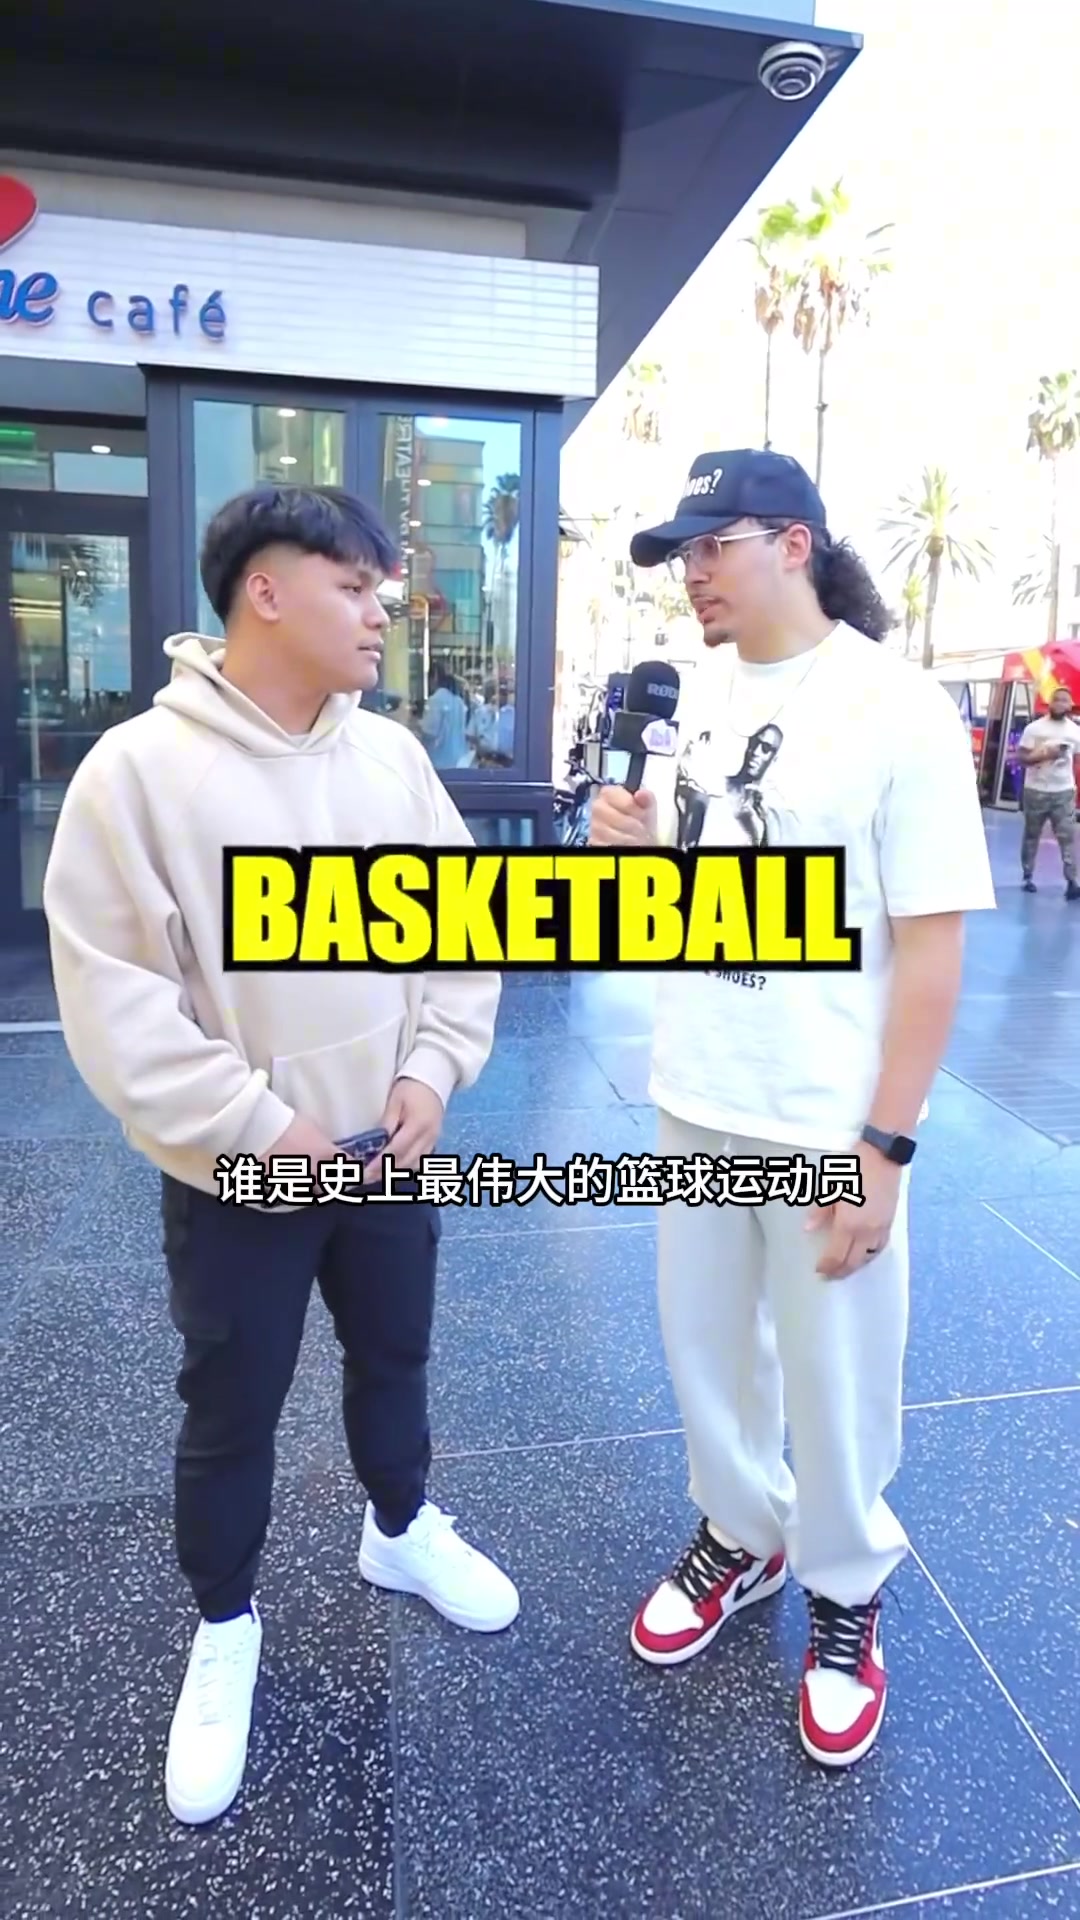 啊哈街头采访球迷：谁是你的篮球之神，有位老哥说出了普尔的名字